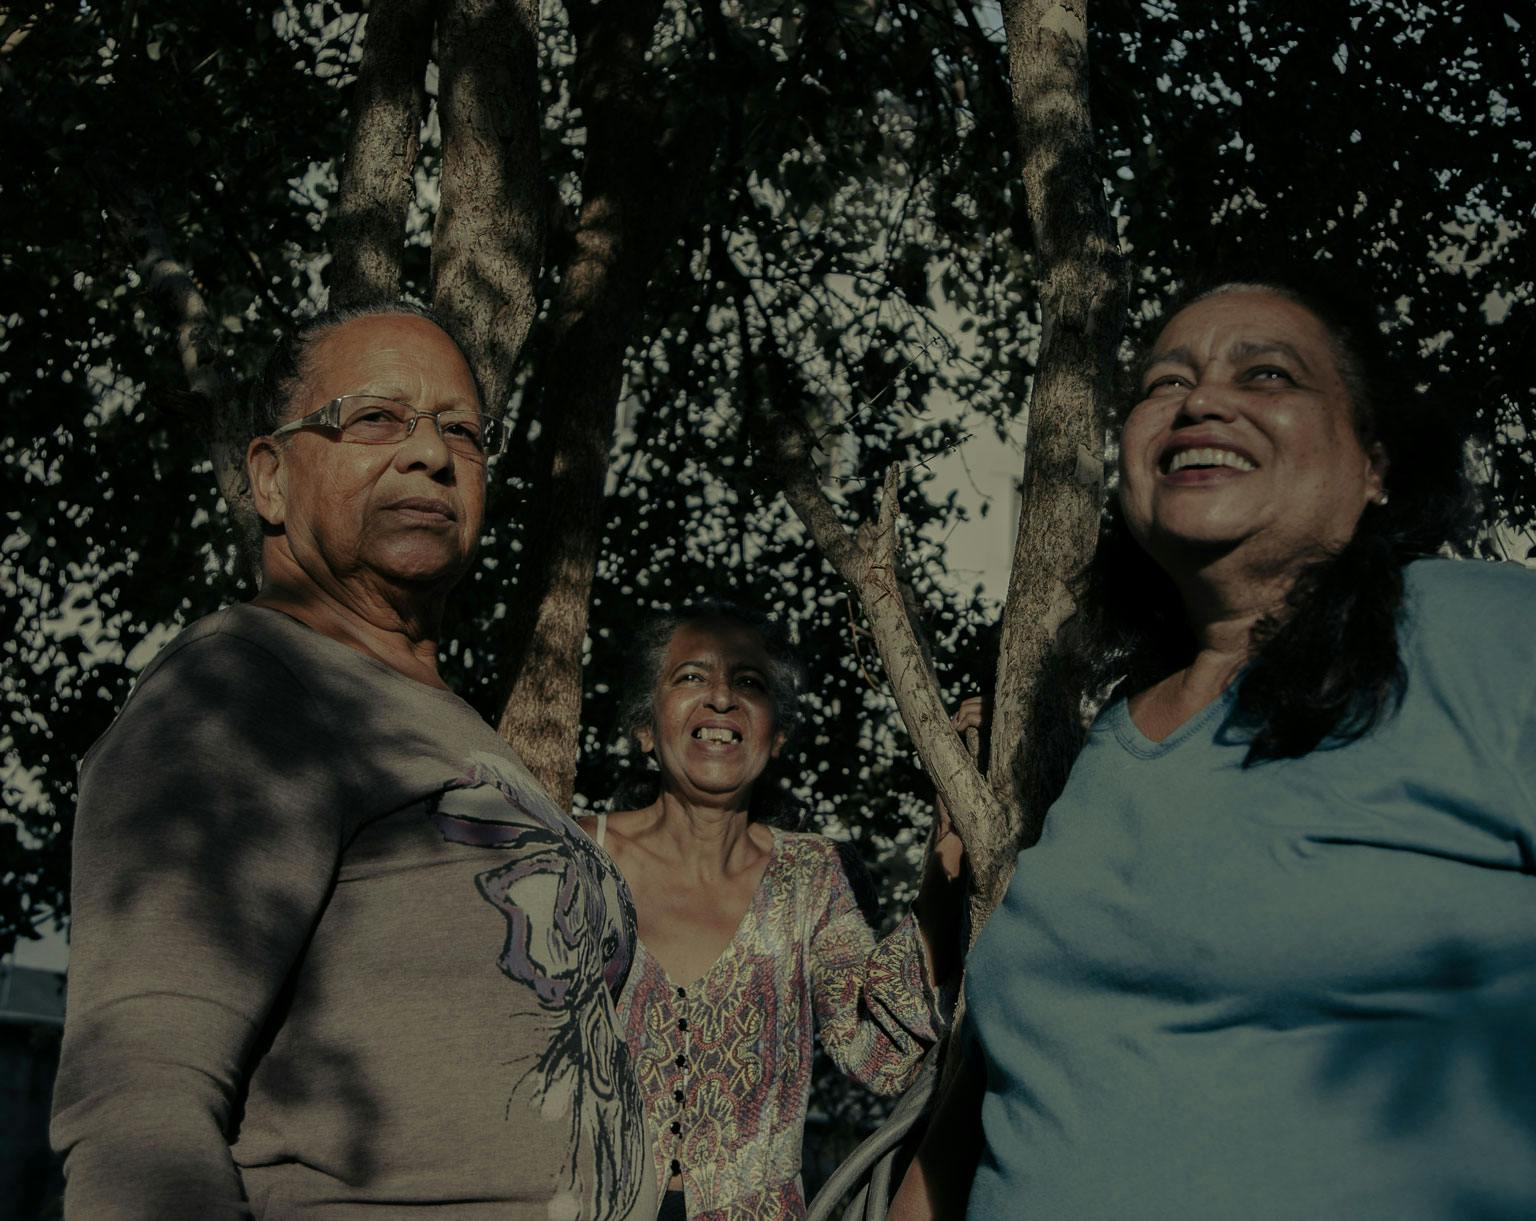 A foto mostra três mulheres sorridentes do Quilombo Família Souza. Uma está mais ao fundo, no meio, e usa um vestido estampado. A que está a direita usa os cabelos pretos soltos e uma blusa azul claro. A que está à esquerda é a única que olha para a câmera. Ela usa óculos e usa uma blusa cinza com uma estampa no meio. Ao redor das mulheres estão galhos de árvores.